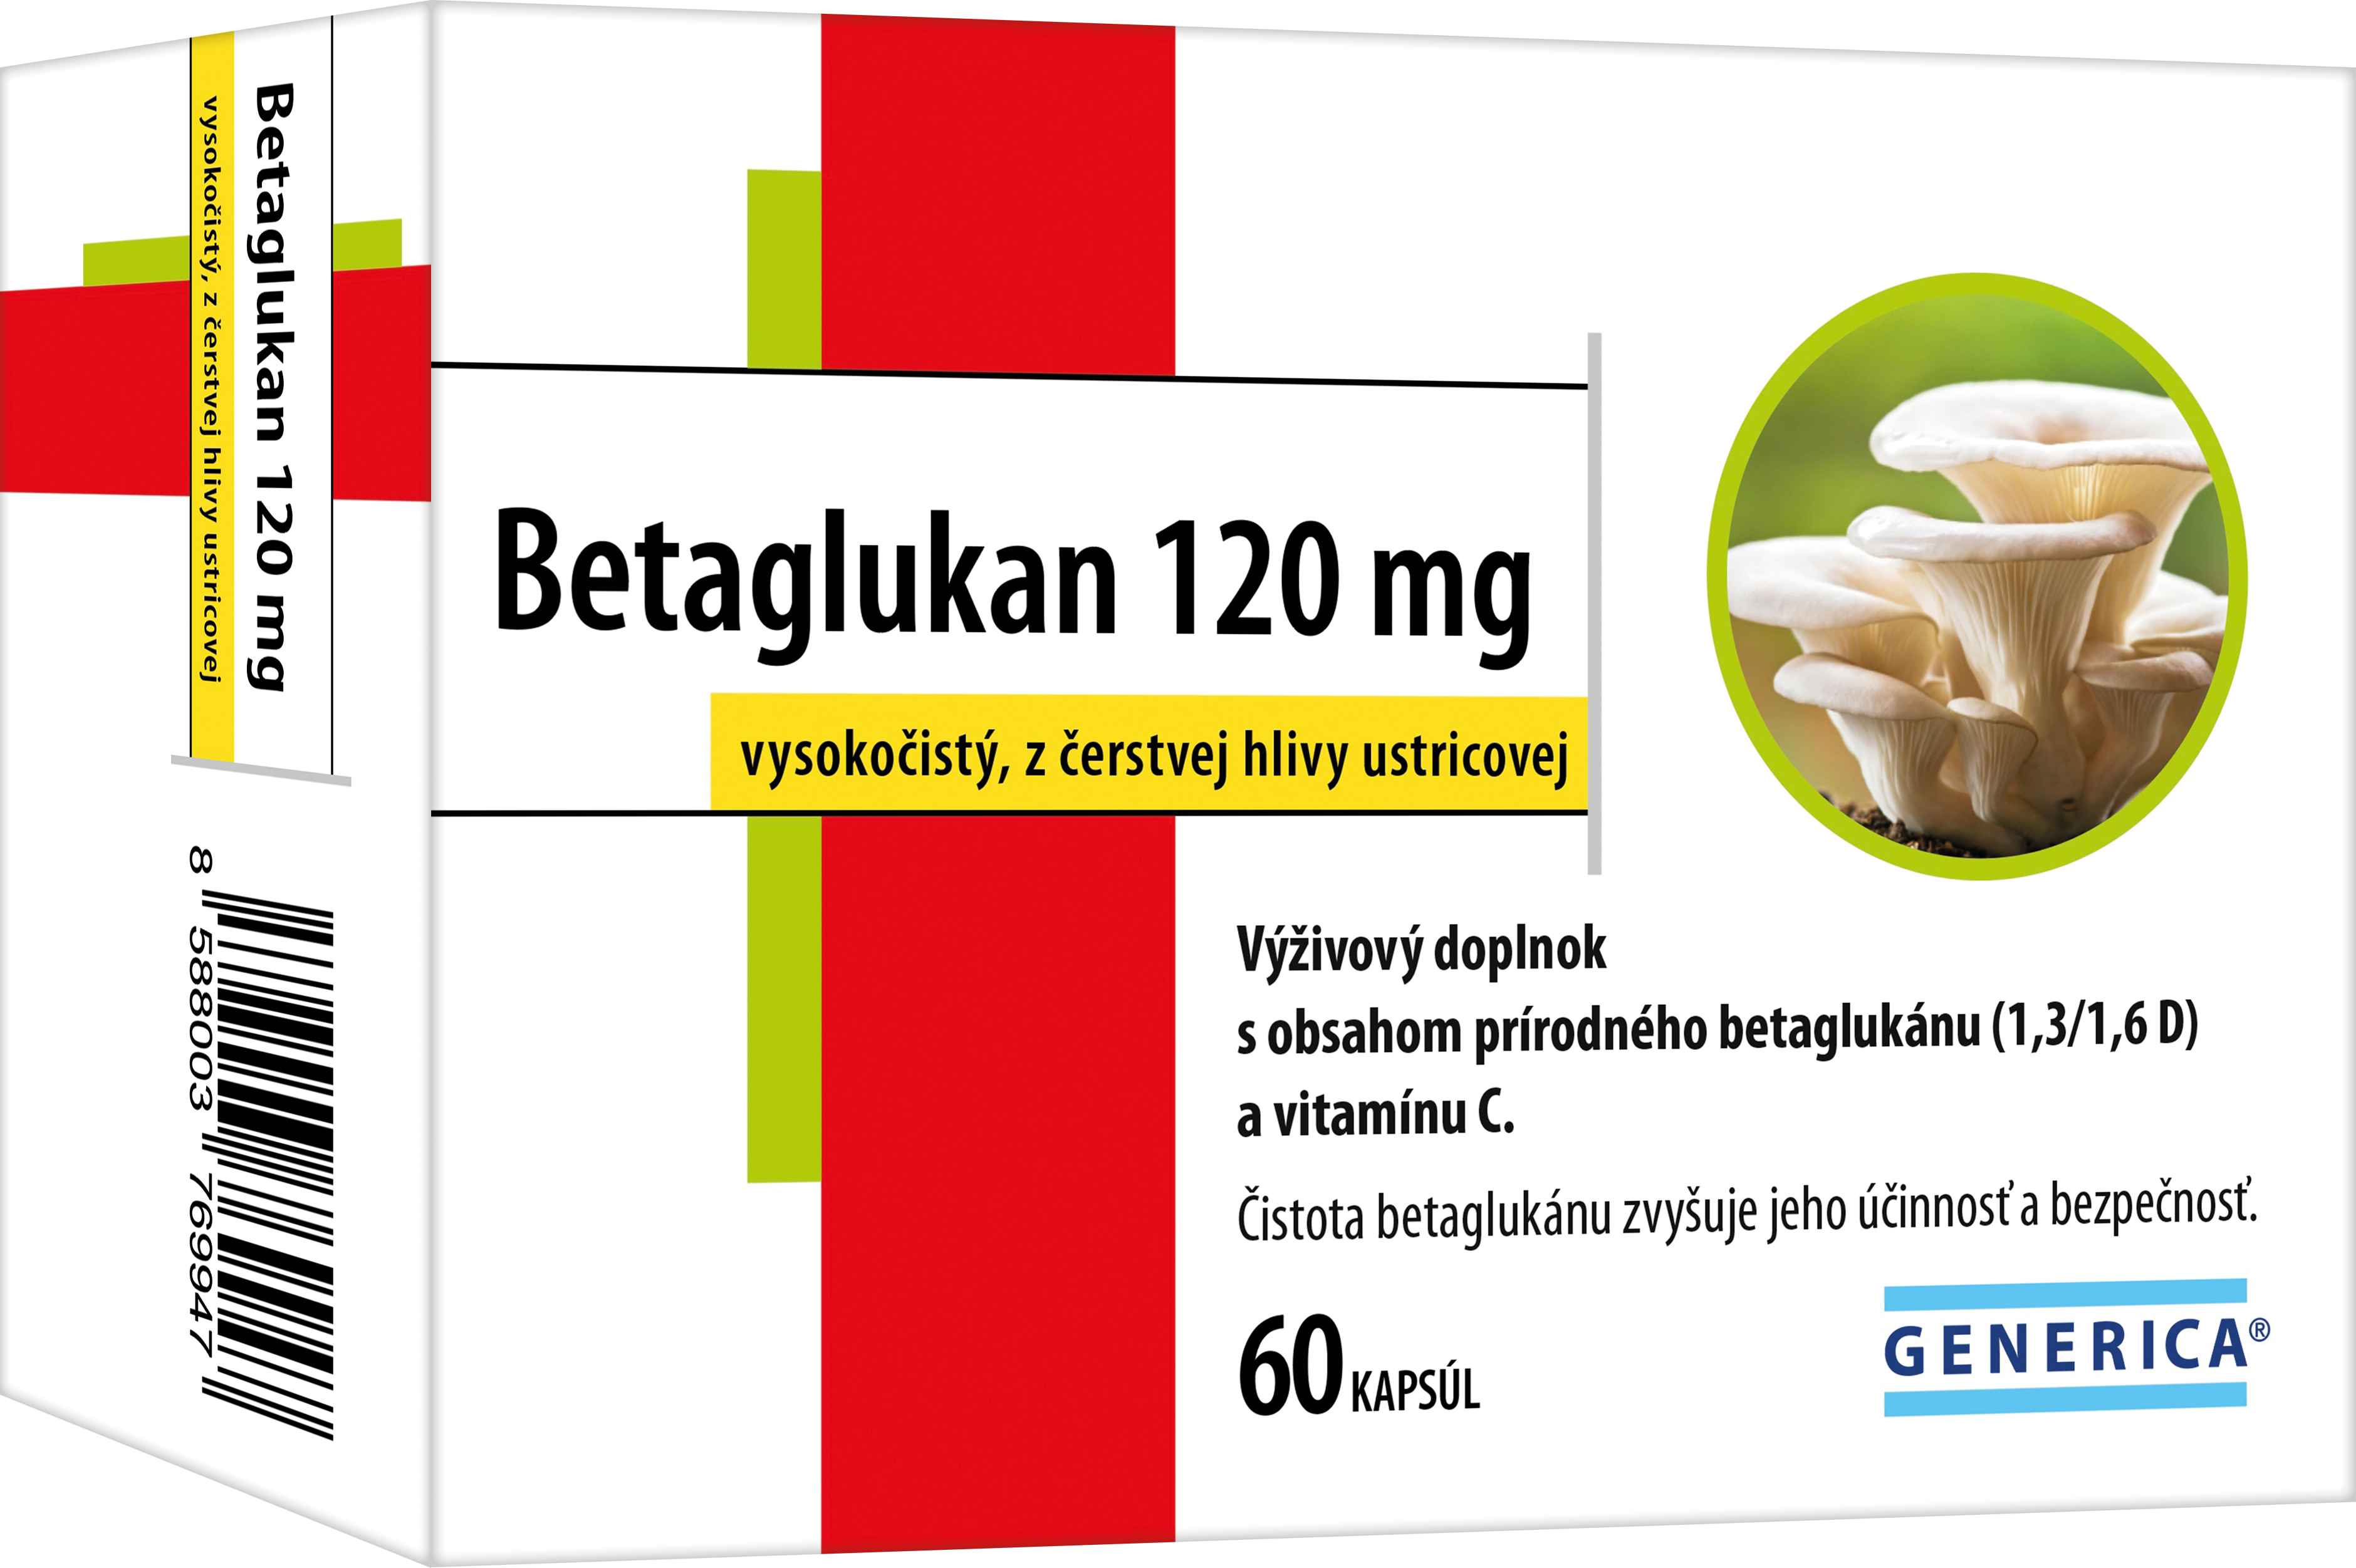 Generica Betaglukan 120 mg